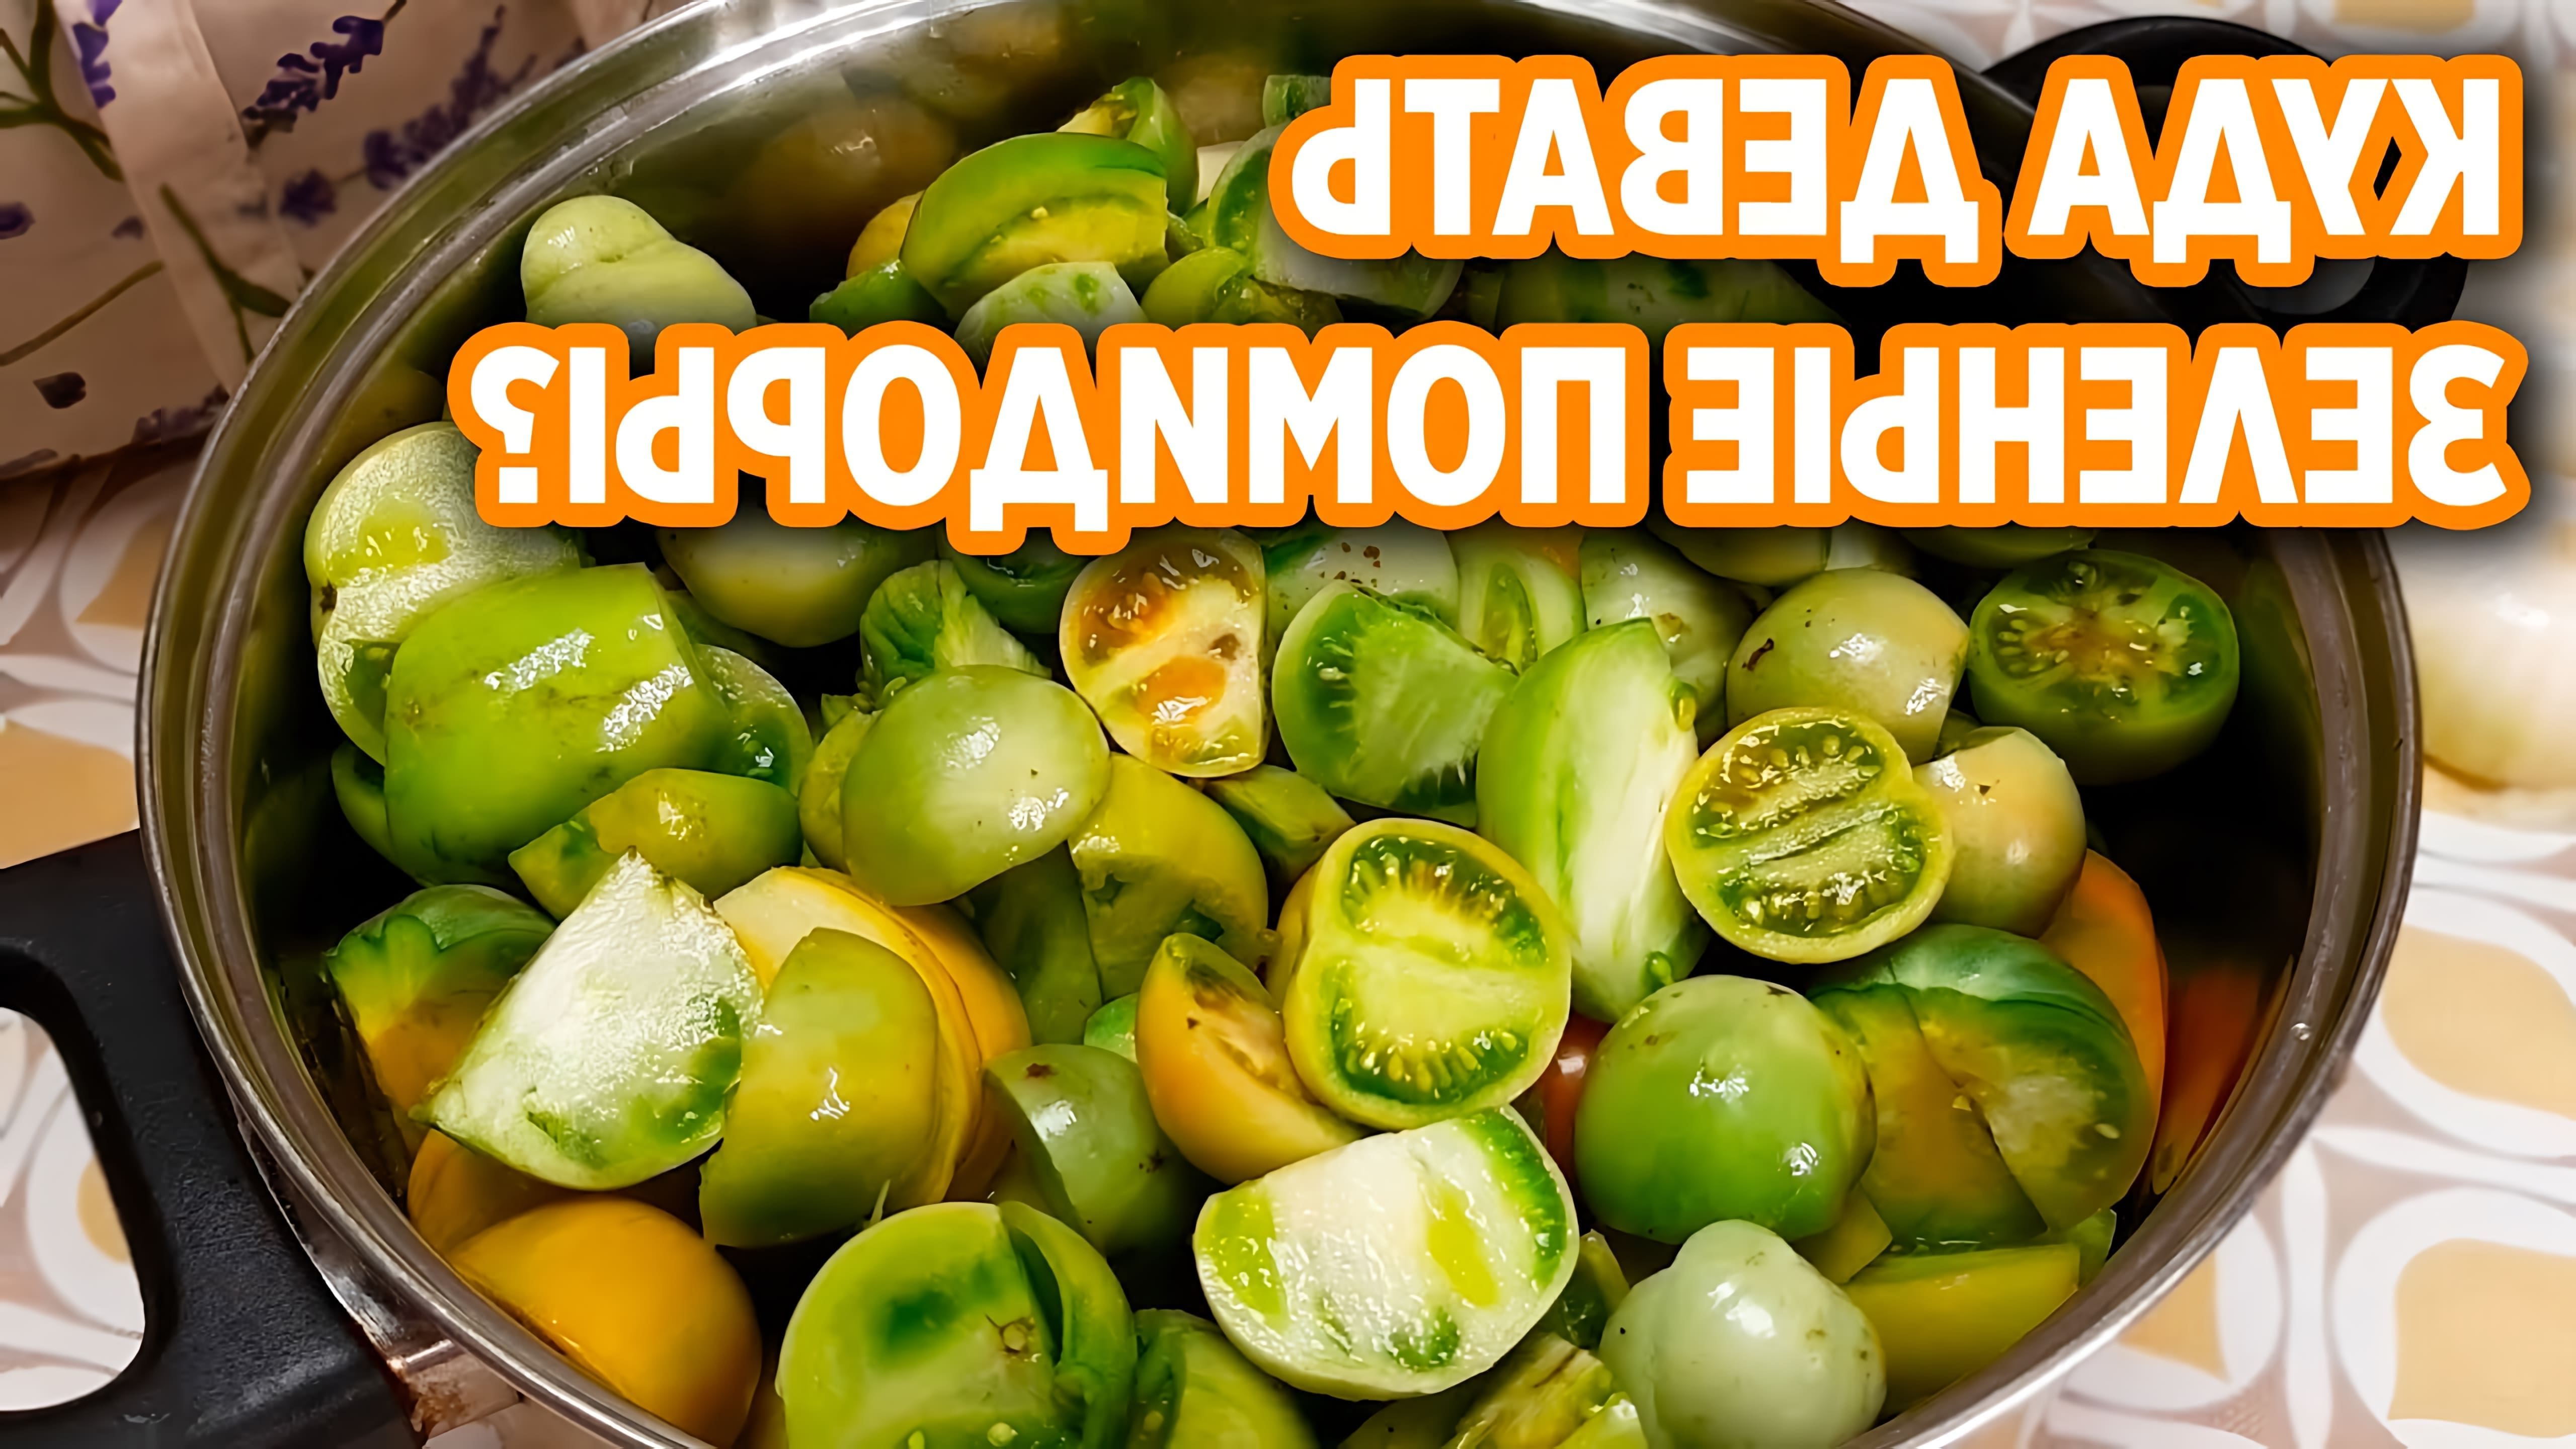 В этом видео Маруся делится рецептом икры из зеленых помидор